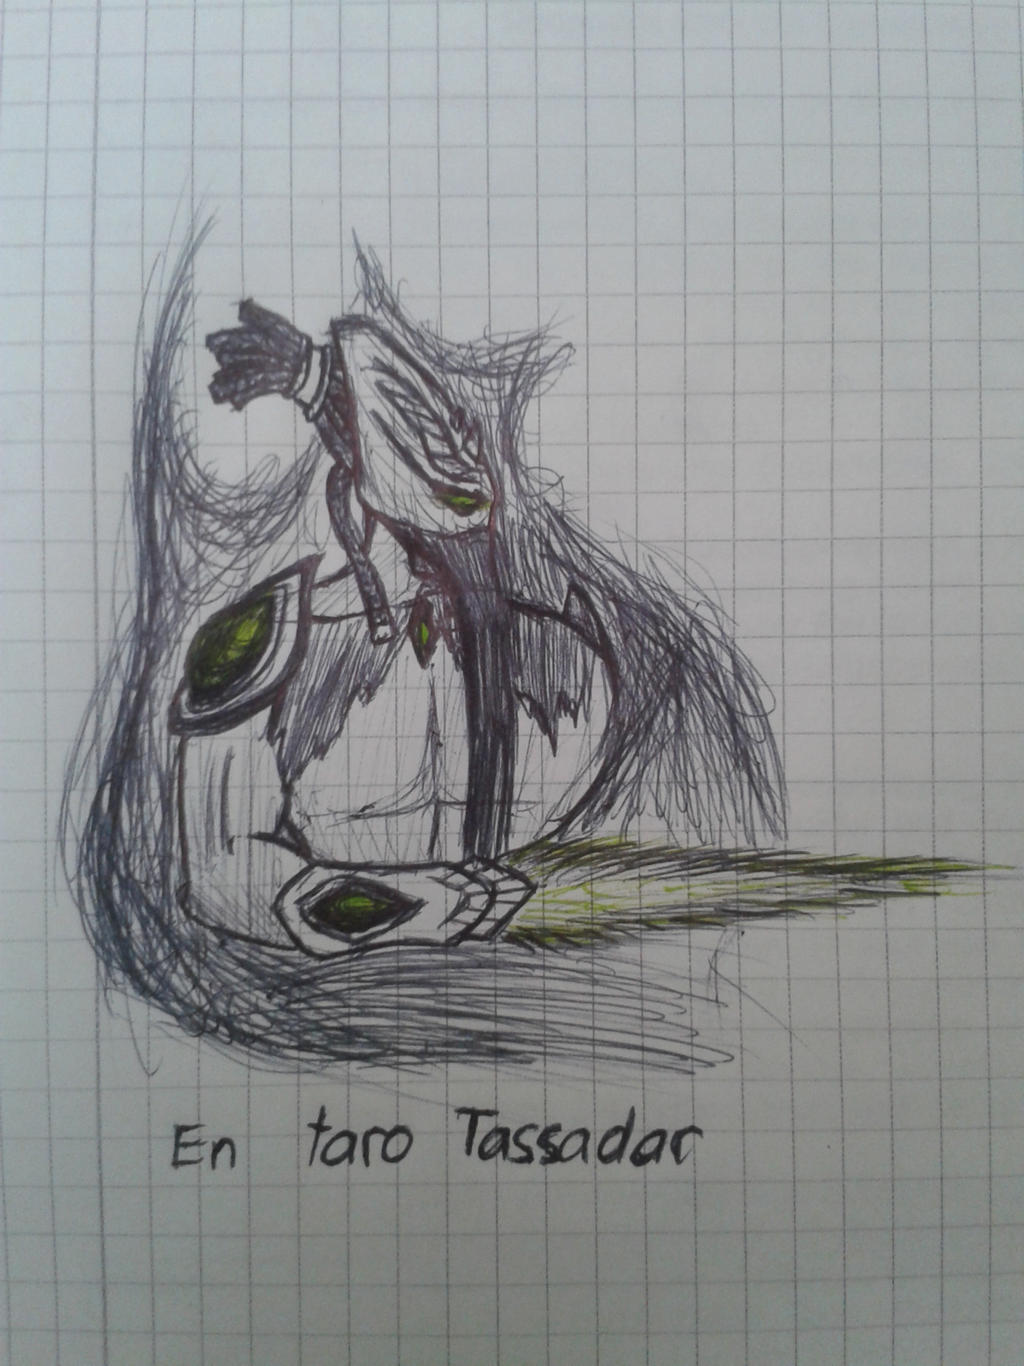 En taro Tassadar! by Tagrasso on DeviantArt